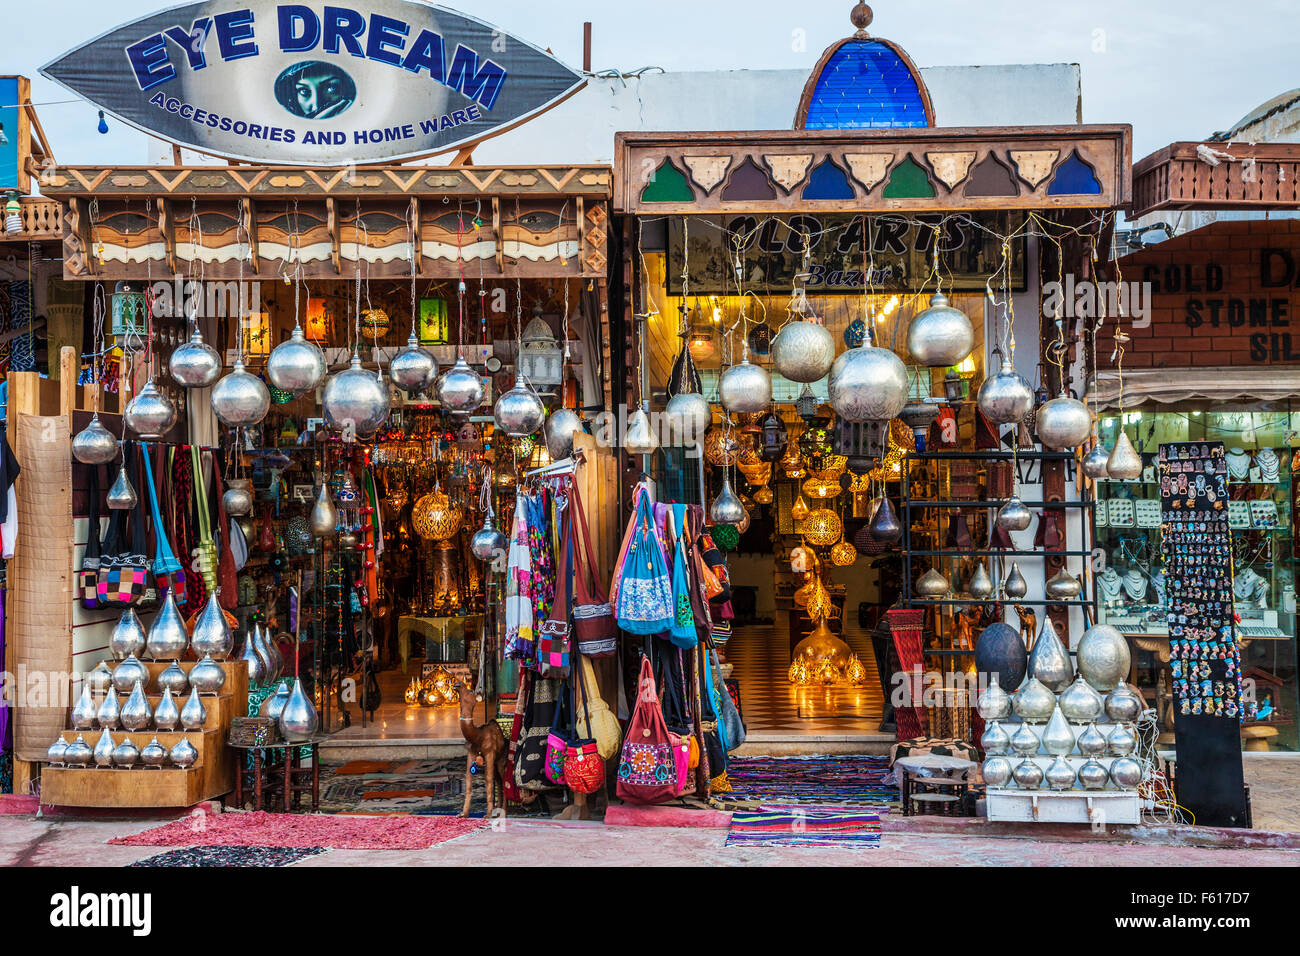 Traditionelle arabische Laternen, Lampen und touristische Souvenirs in Dahab, Ägypten. Stockfoto